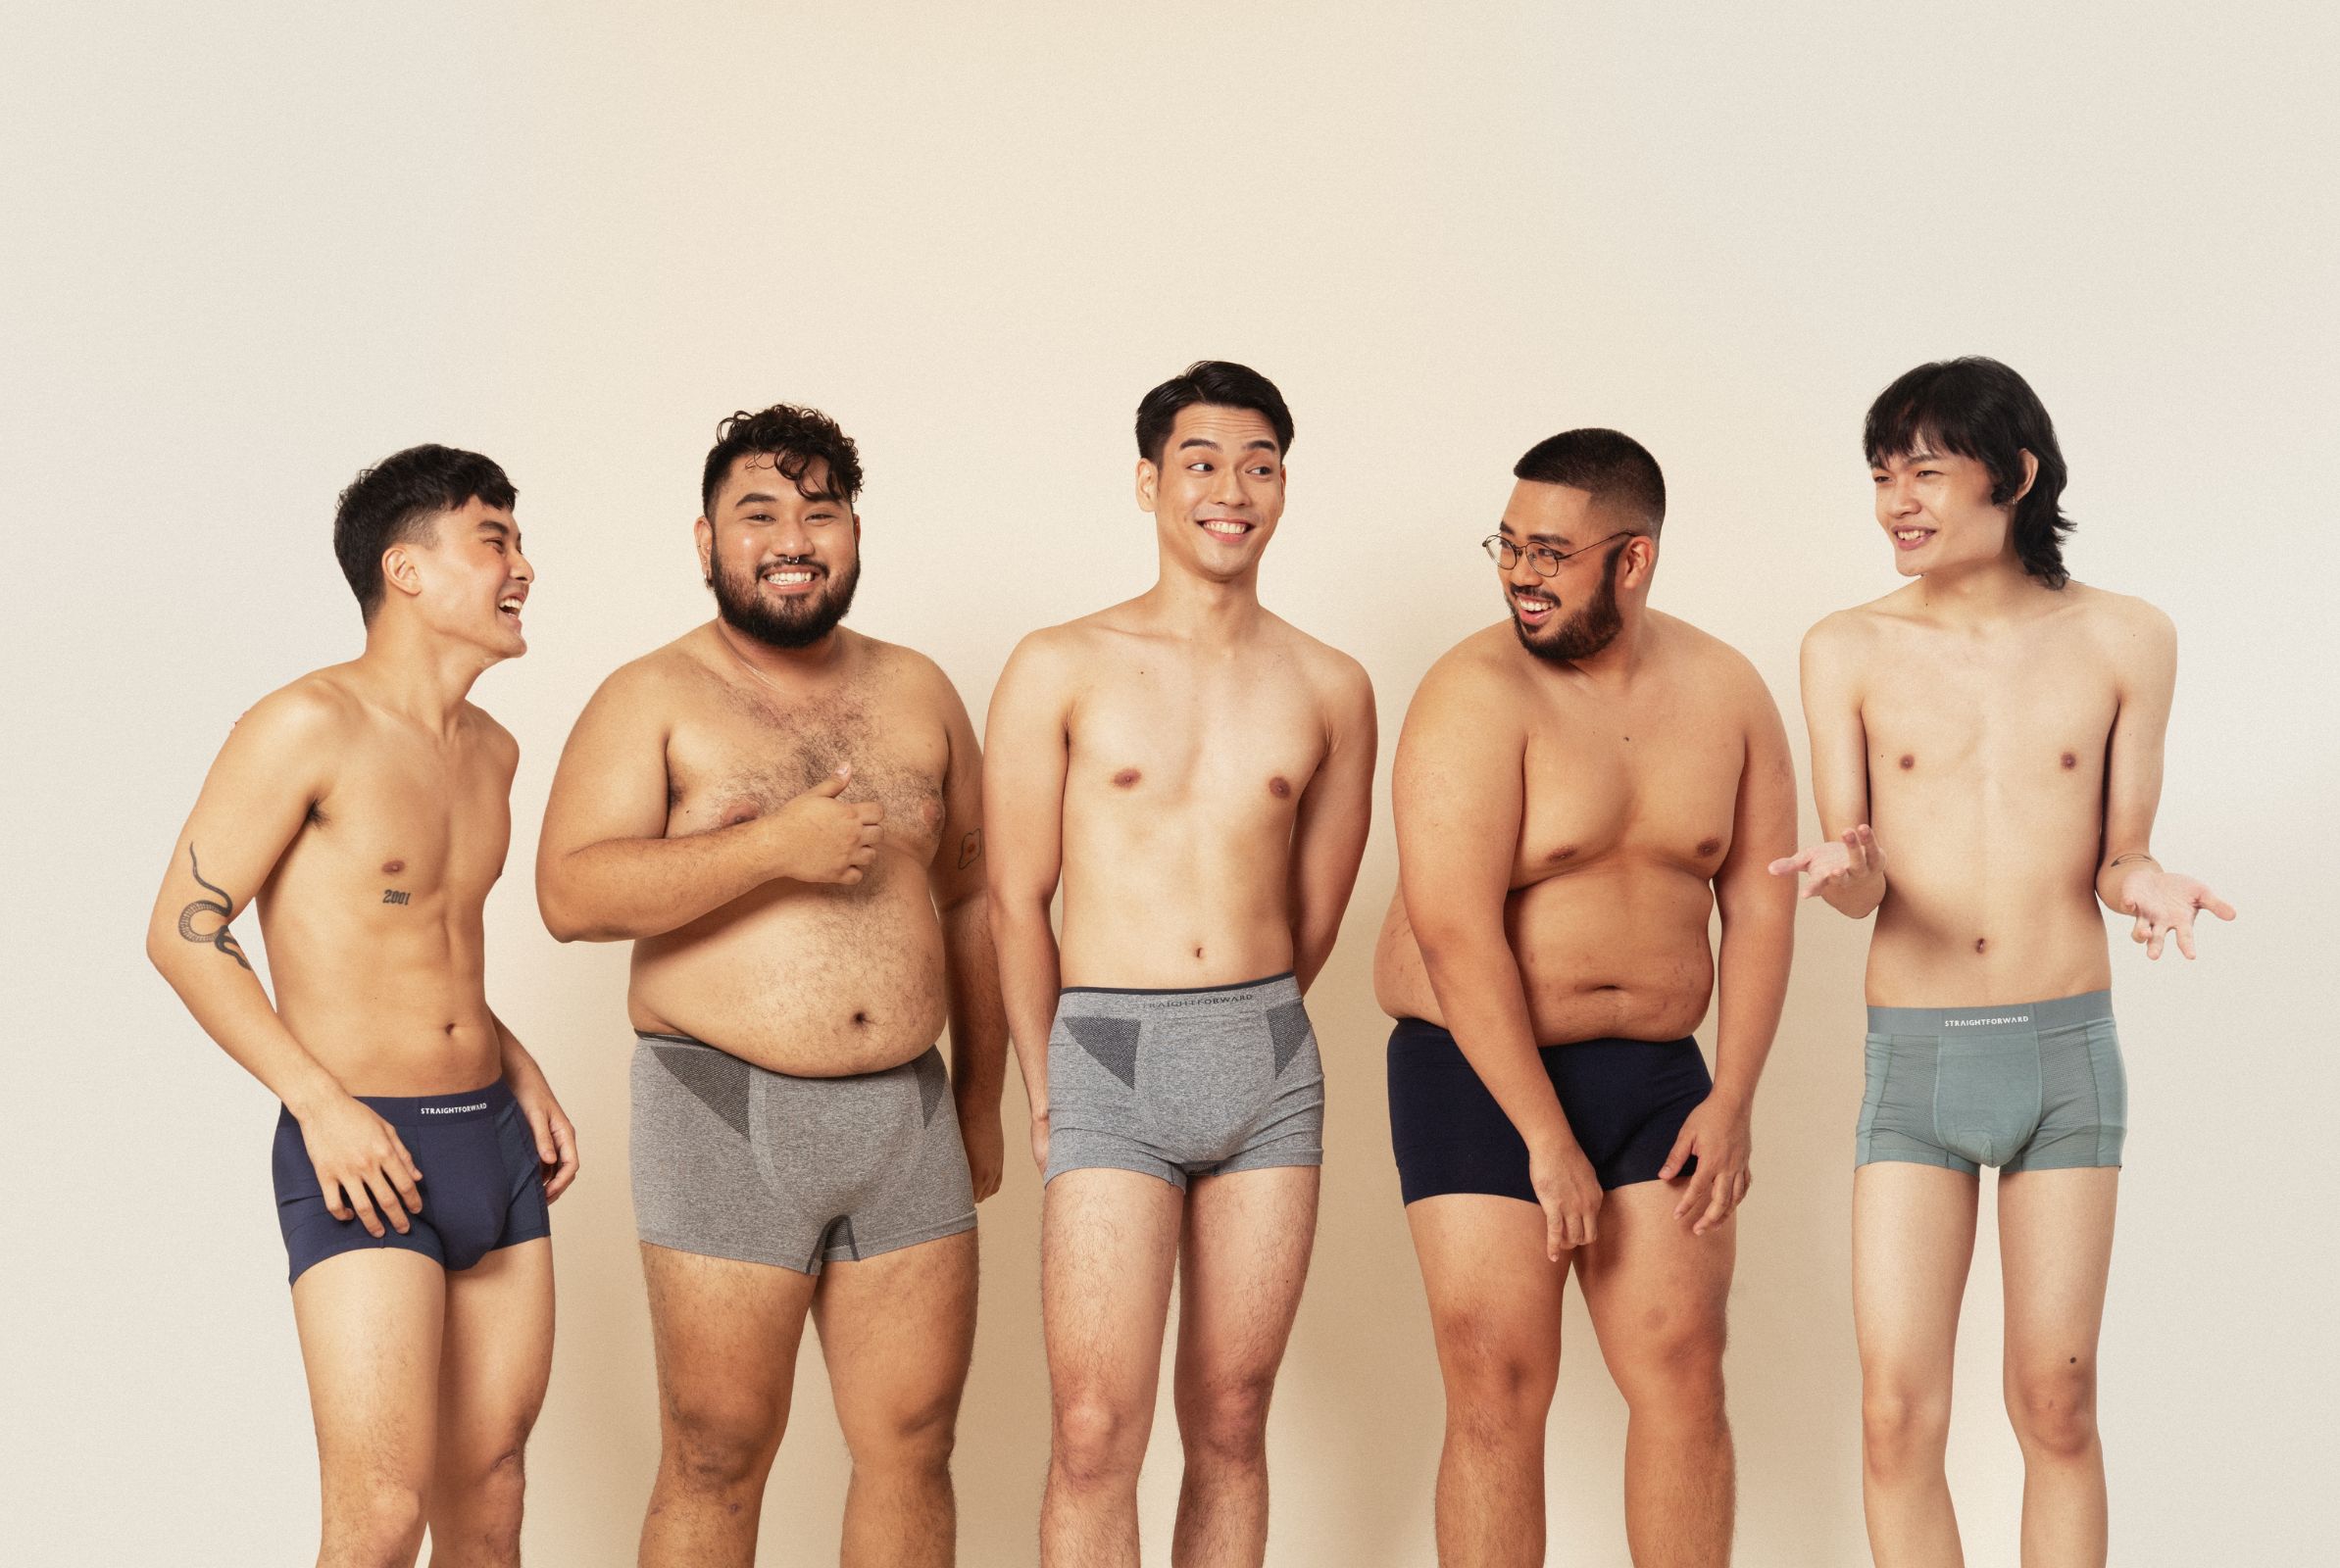 Straightforward underwear campaign